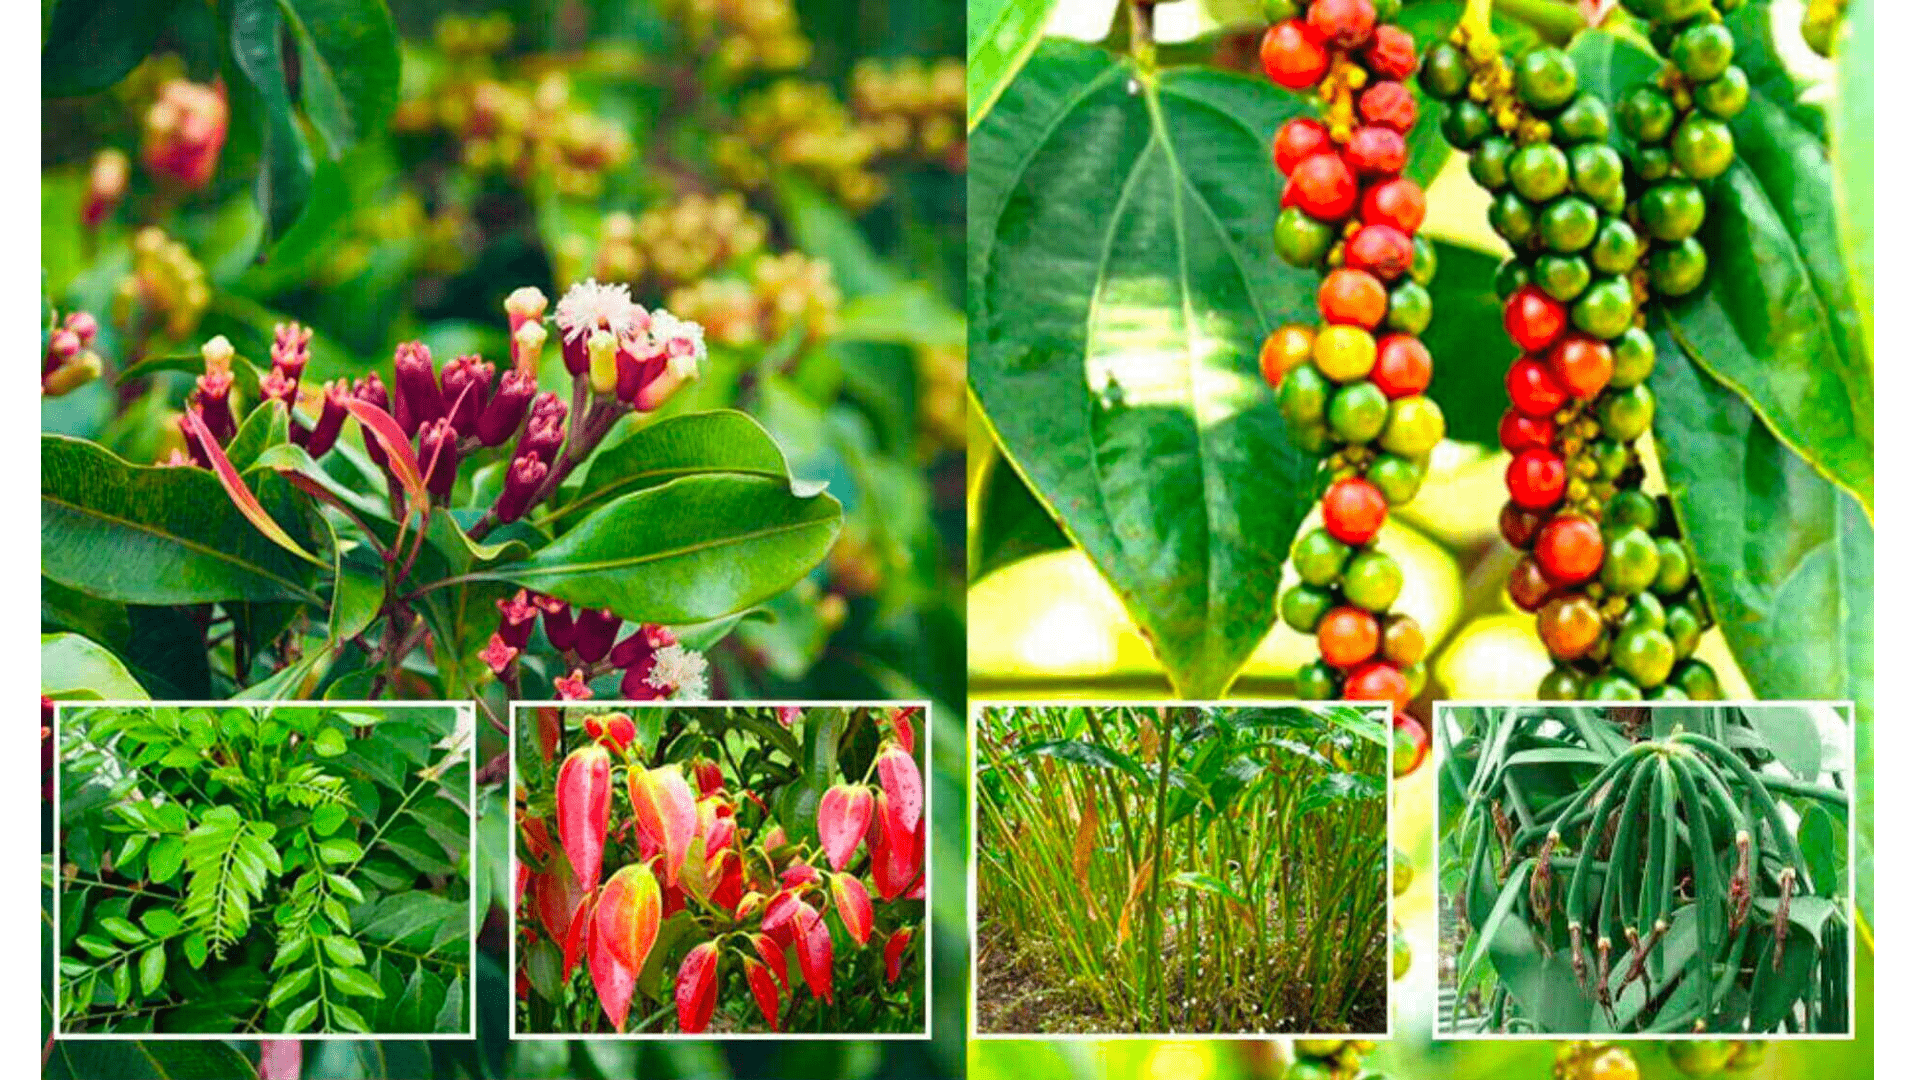 Spice Routes: Kerala's Spice Garden